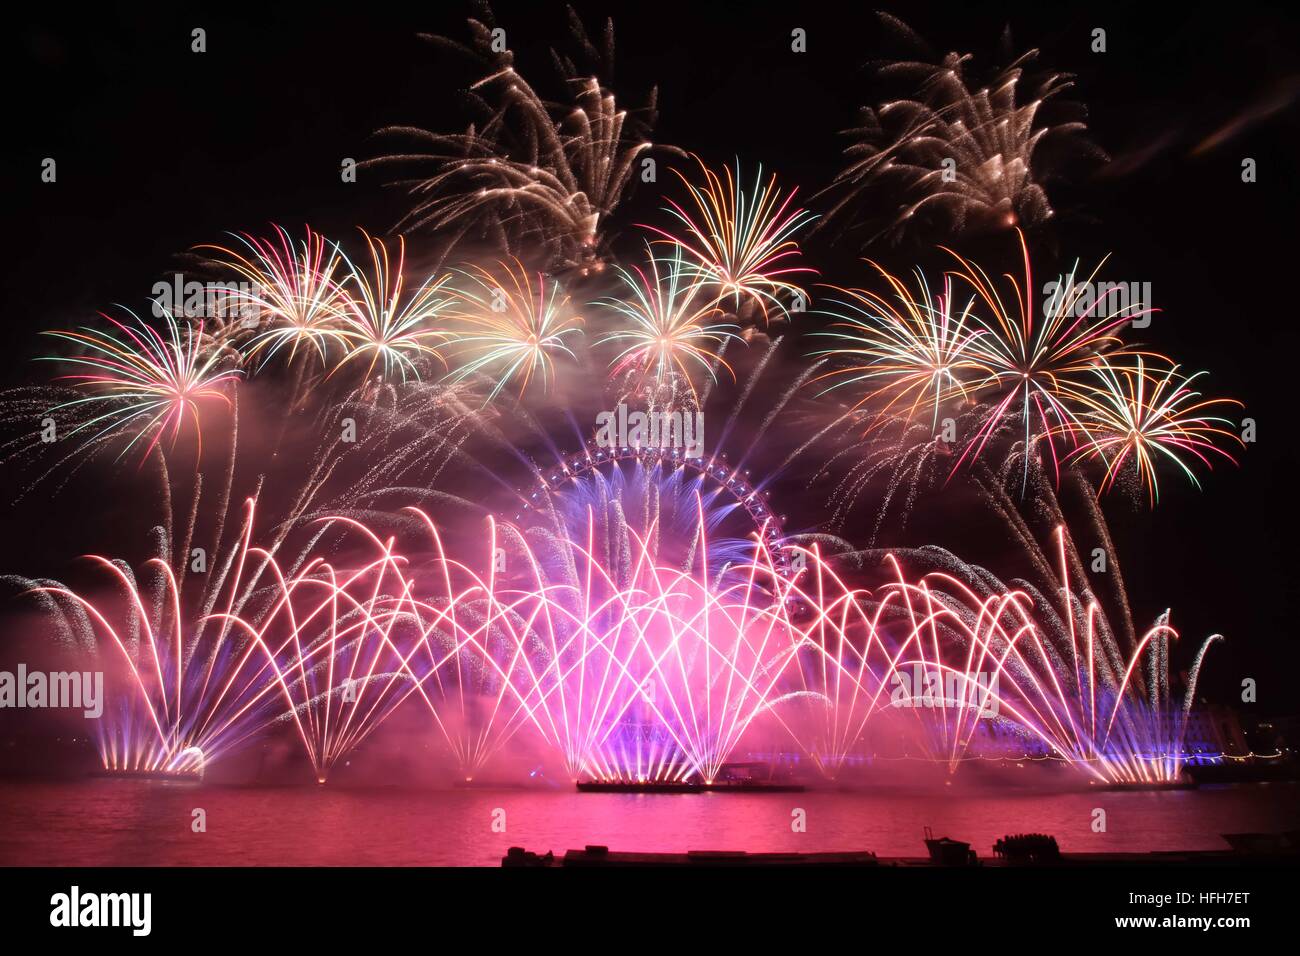 Londres, Royaume-Uni. 1er janvier 2017. D'artifice sont tirés depuis la grande roue London Eye pour marquer le début de la nouvelle année. Crédit : Paul Brocklehurst/Alamy Live News Banque D'Images